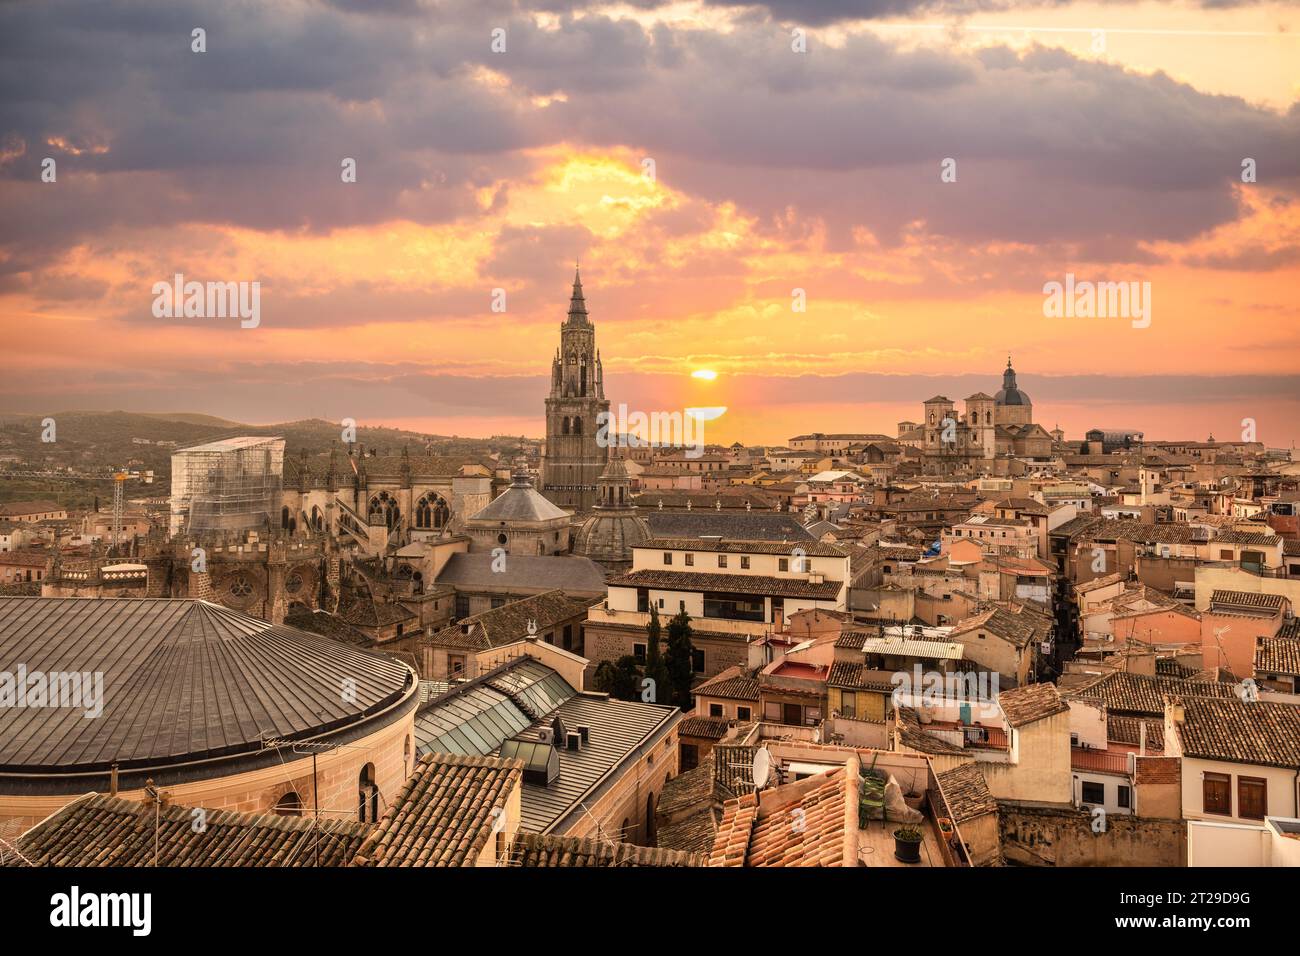 Tramonto dai tetti della città medievale di Toledo a Castilla la Mancha, Spagna Foto Stock